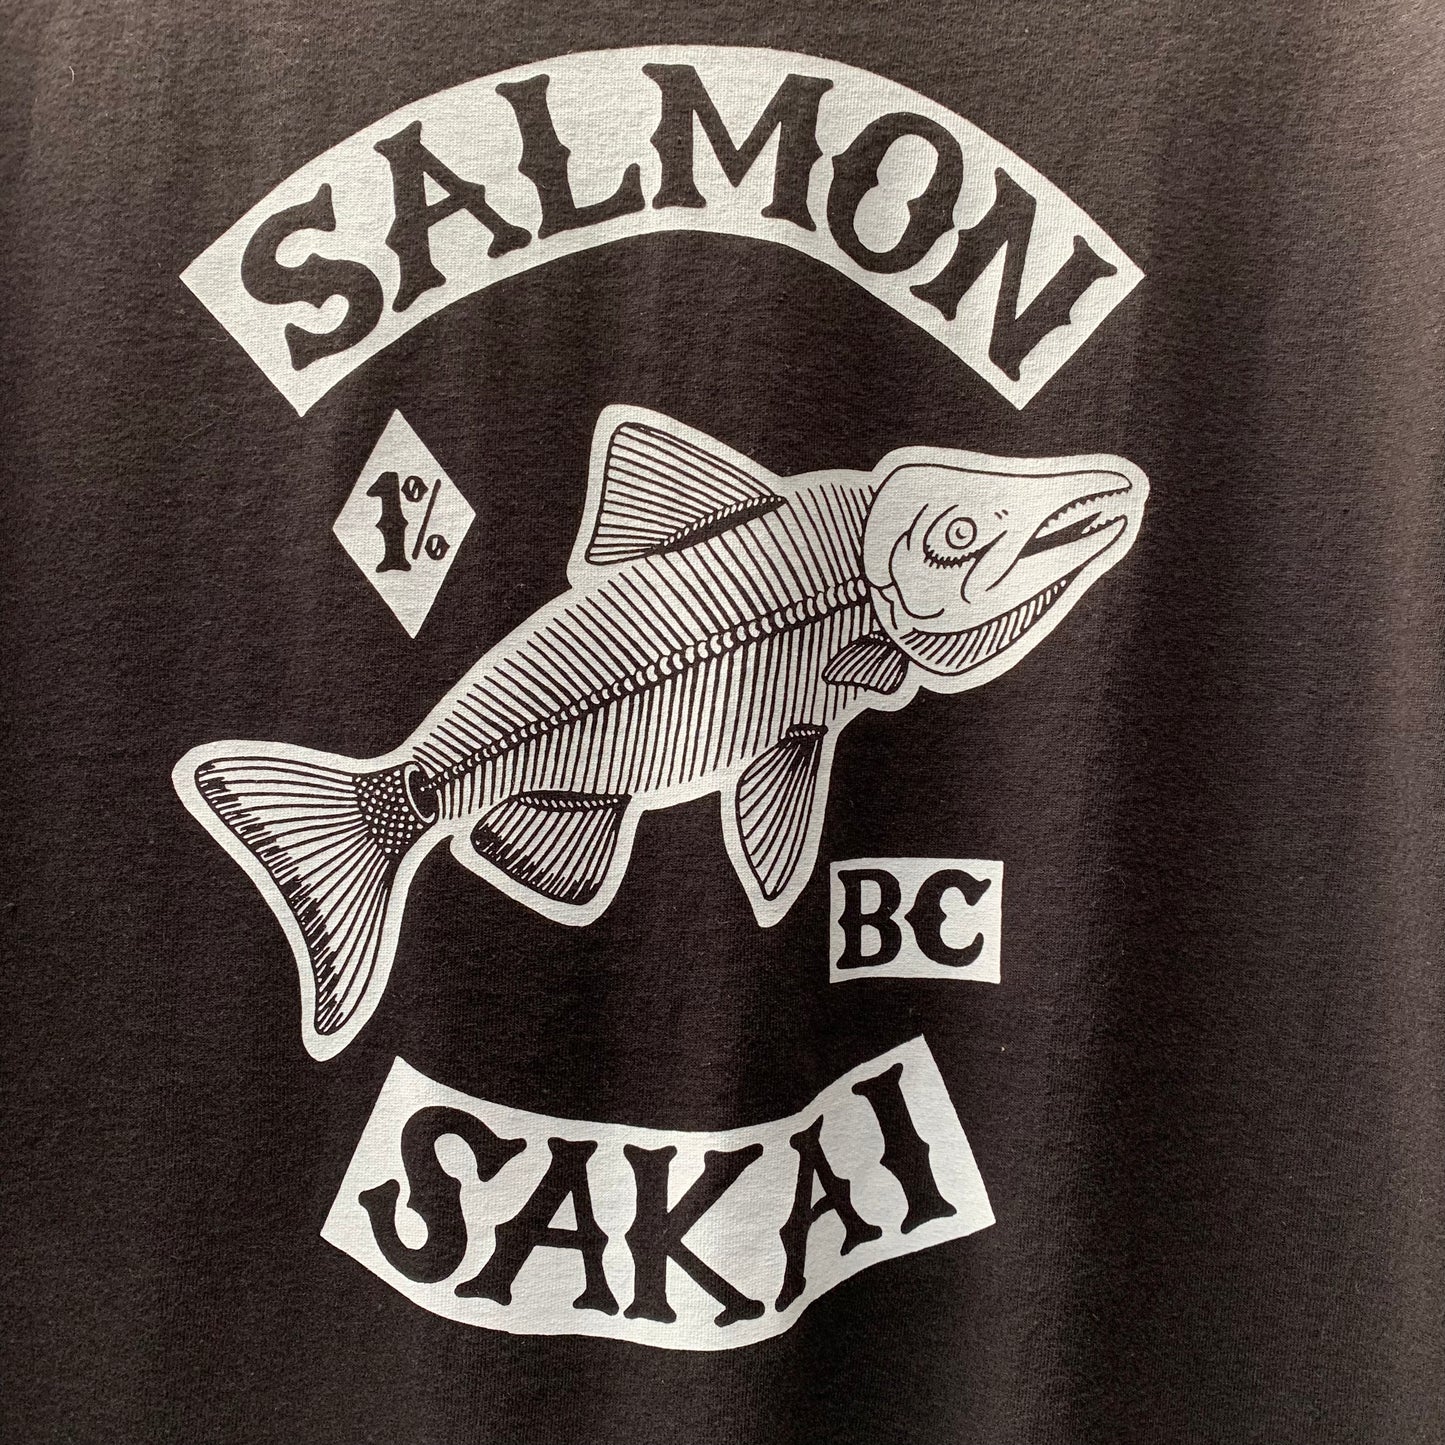 Sakai Salmon T-shirt